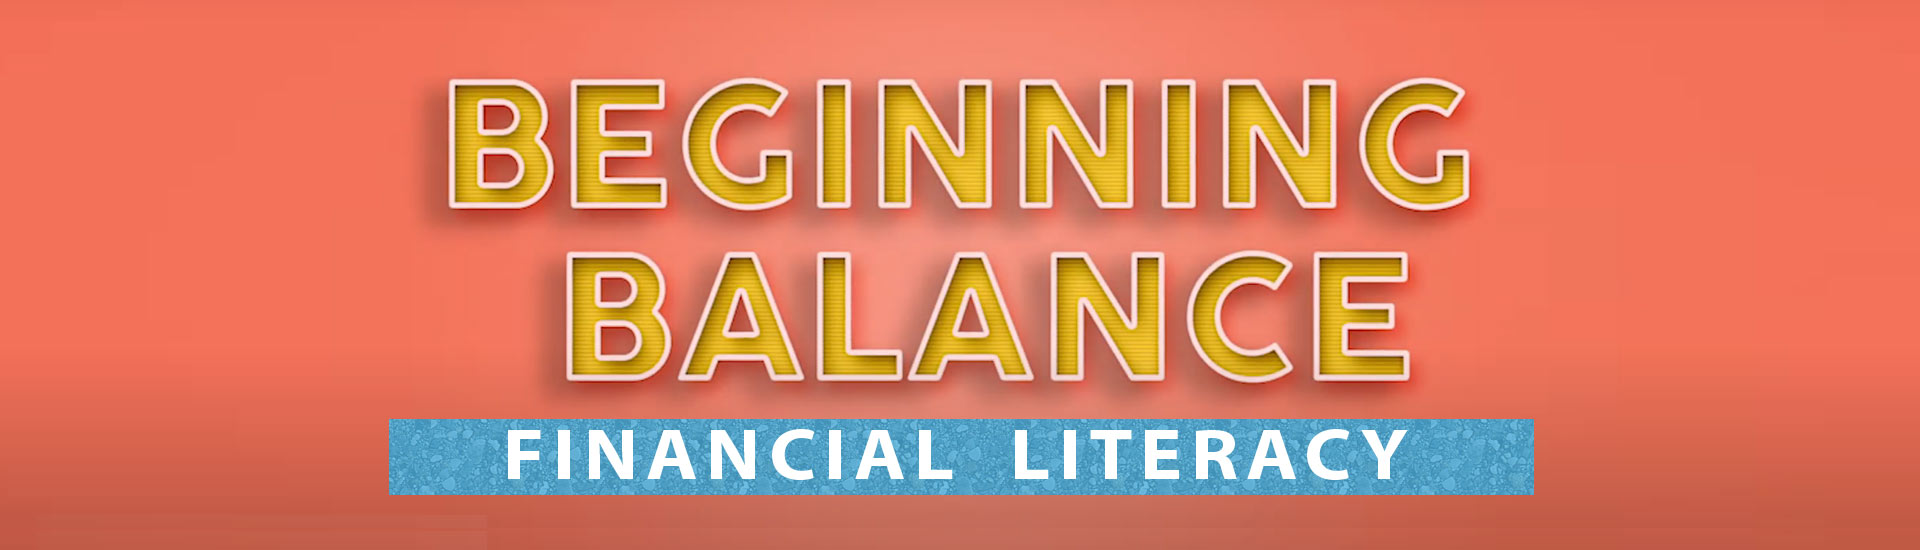 Beginning Balance: Financial Literacy